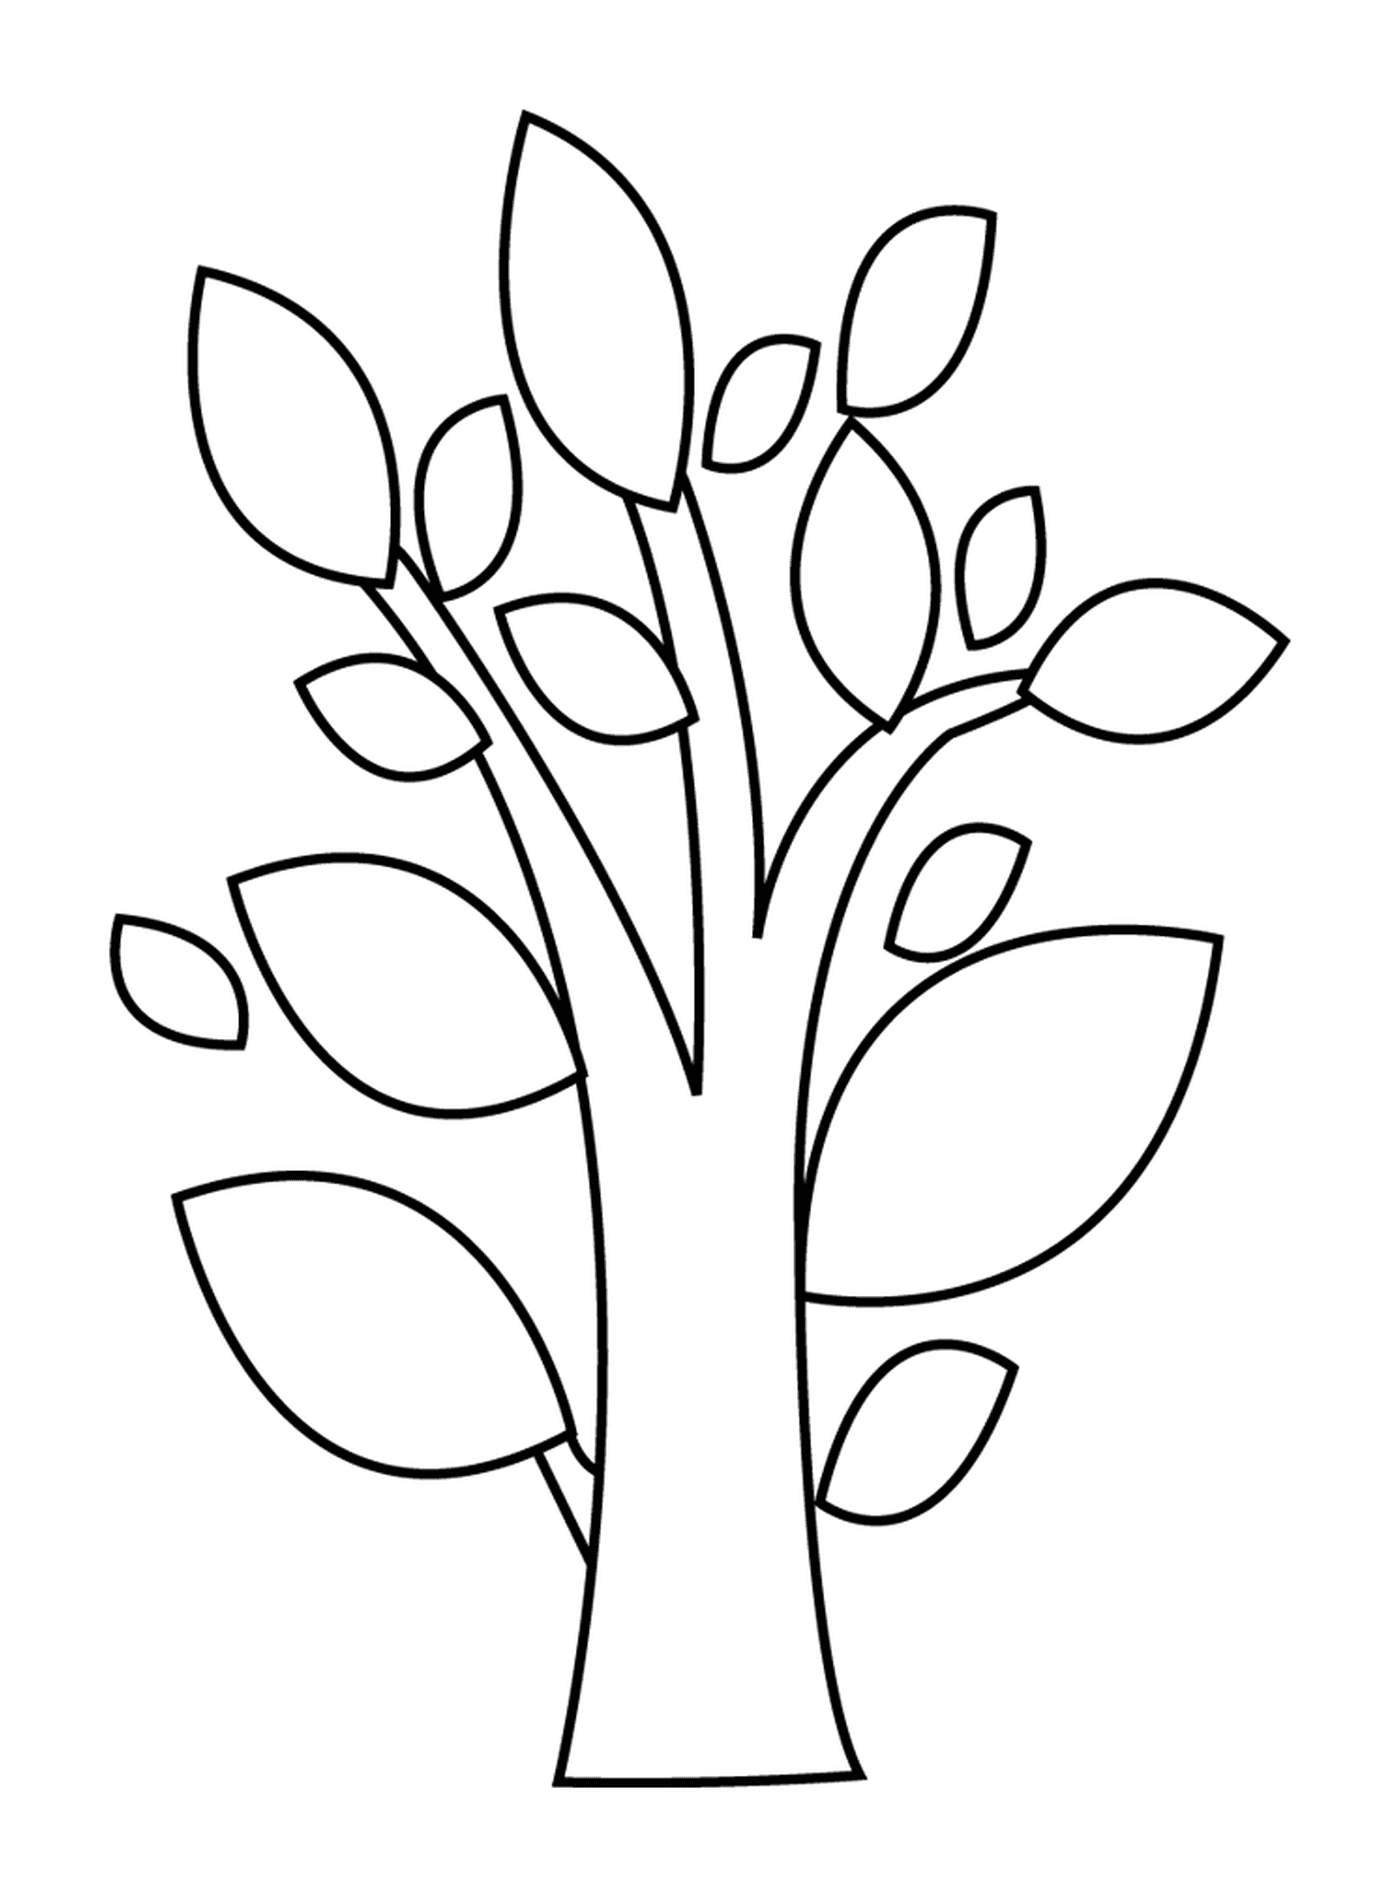  Uma árvore decídua 